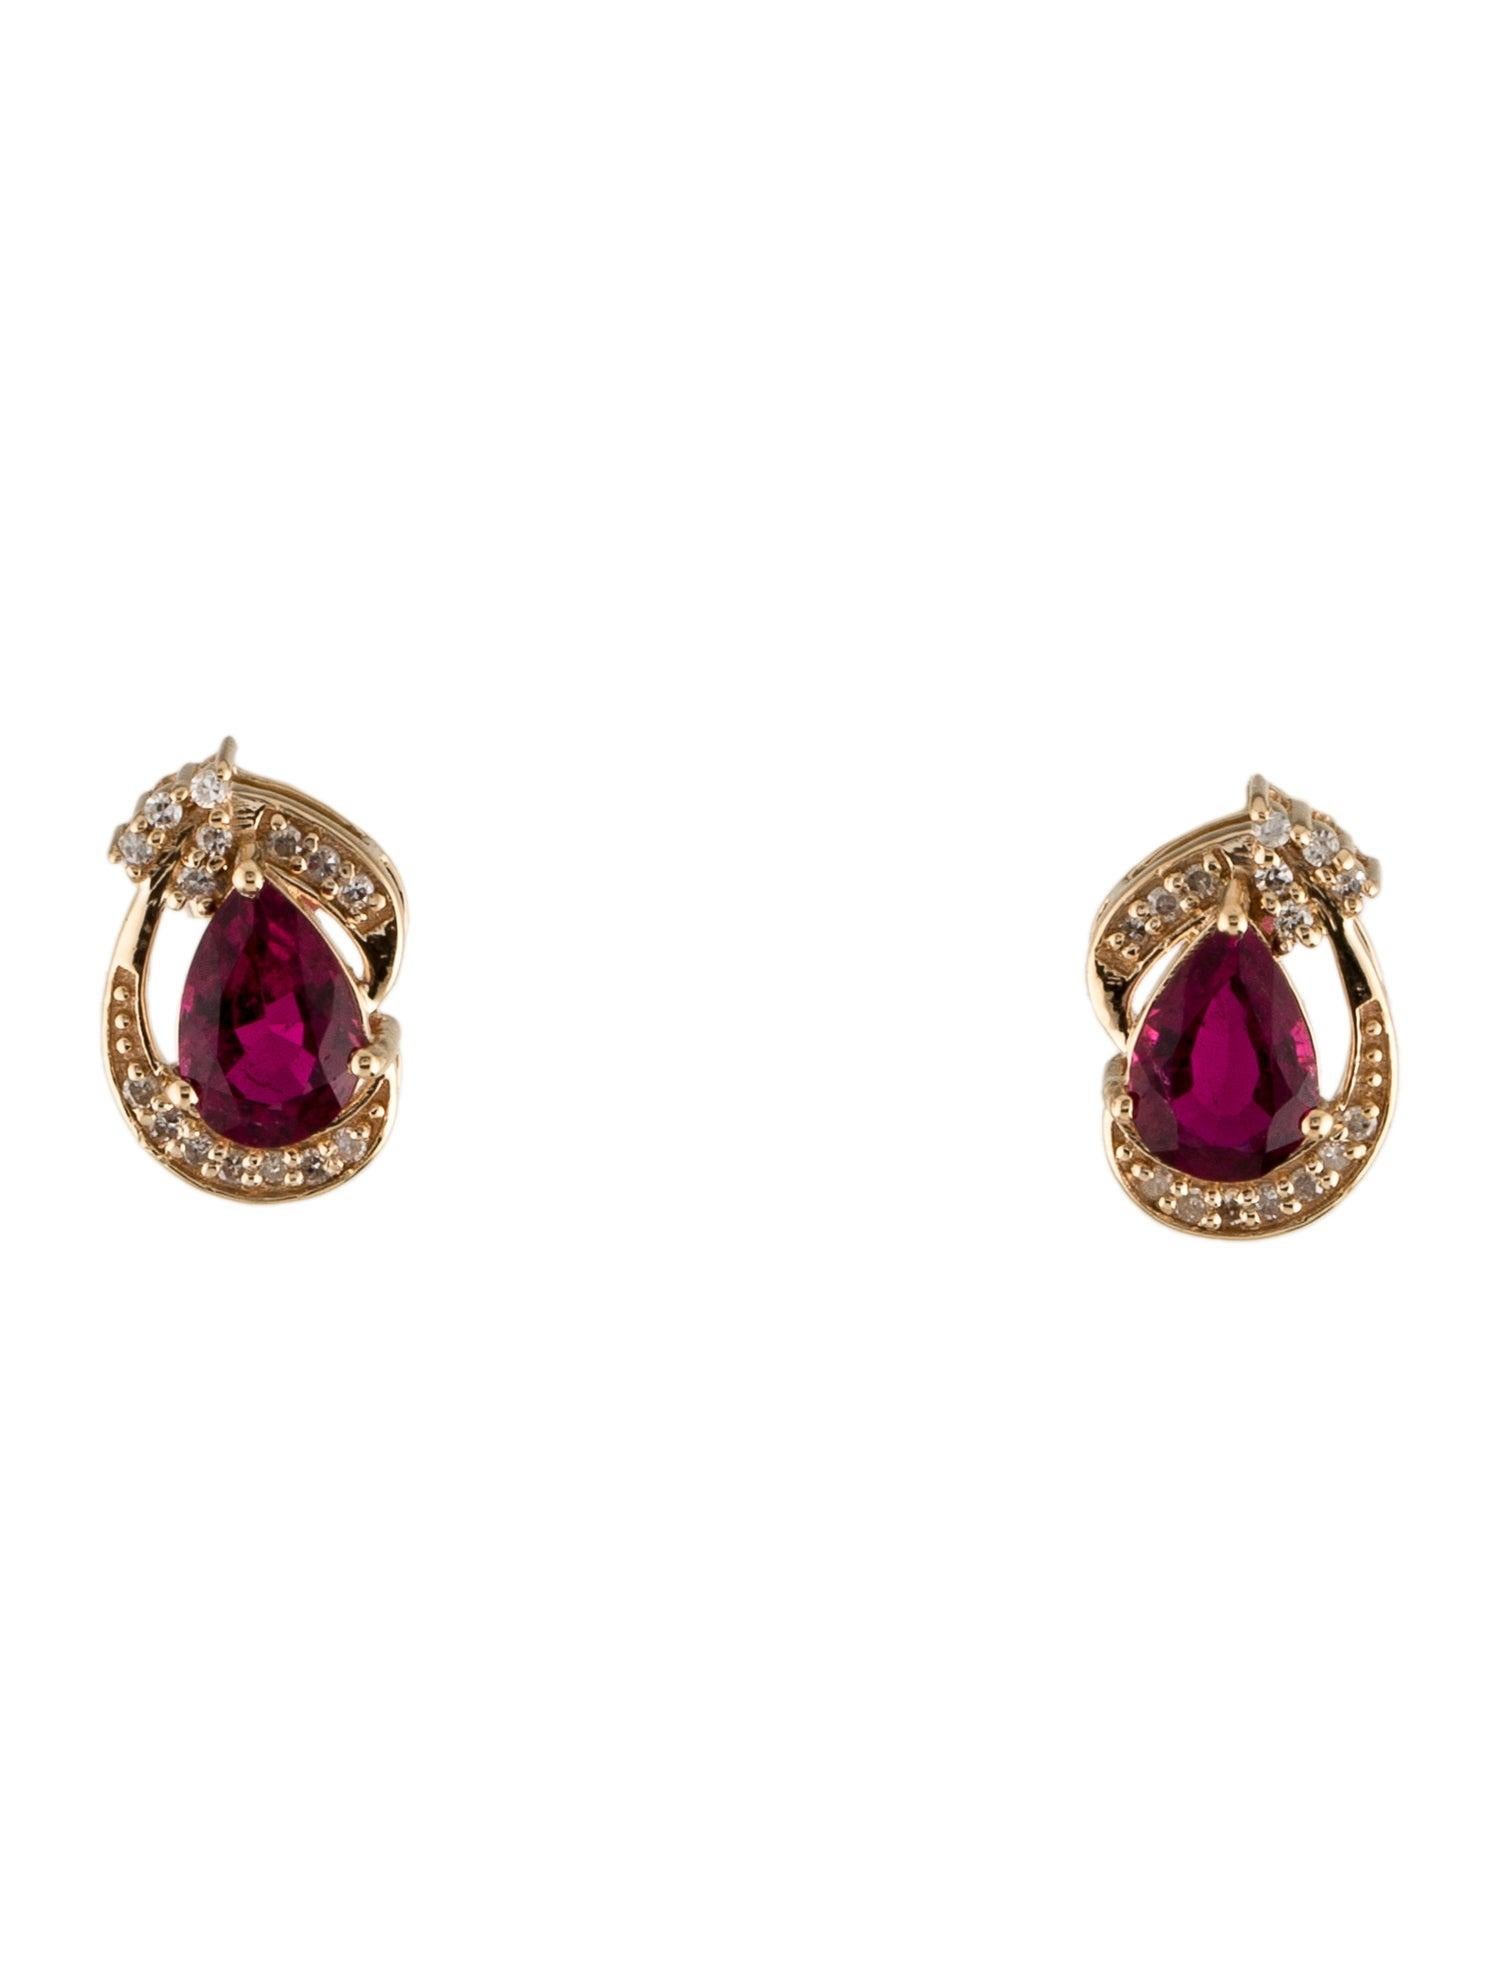 Laissez-vous séduire par l'allure envoûtante de nos boucles d'oreilles Rose Radiance de la collection Vibrant Pink Treasures, où la beauté profonde de la Rubellite rencontre l'éclat intemporel des diamants. Plongez dans le riche héritage de